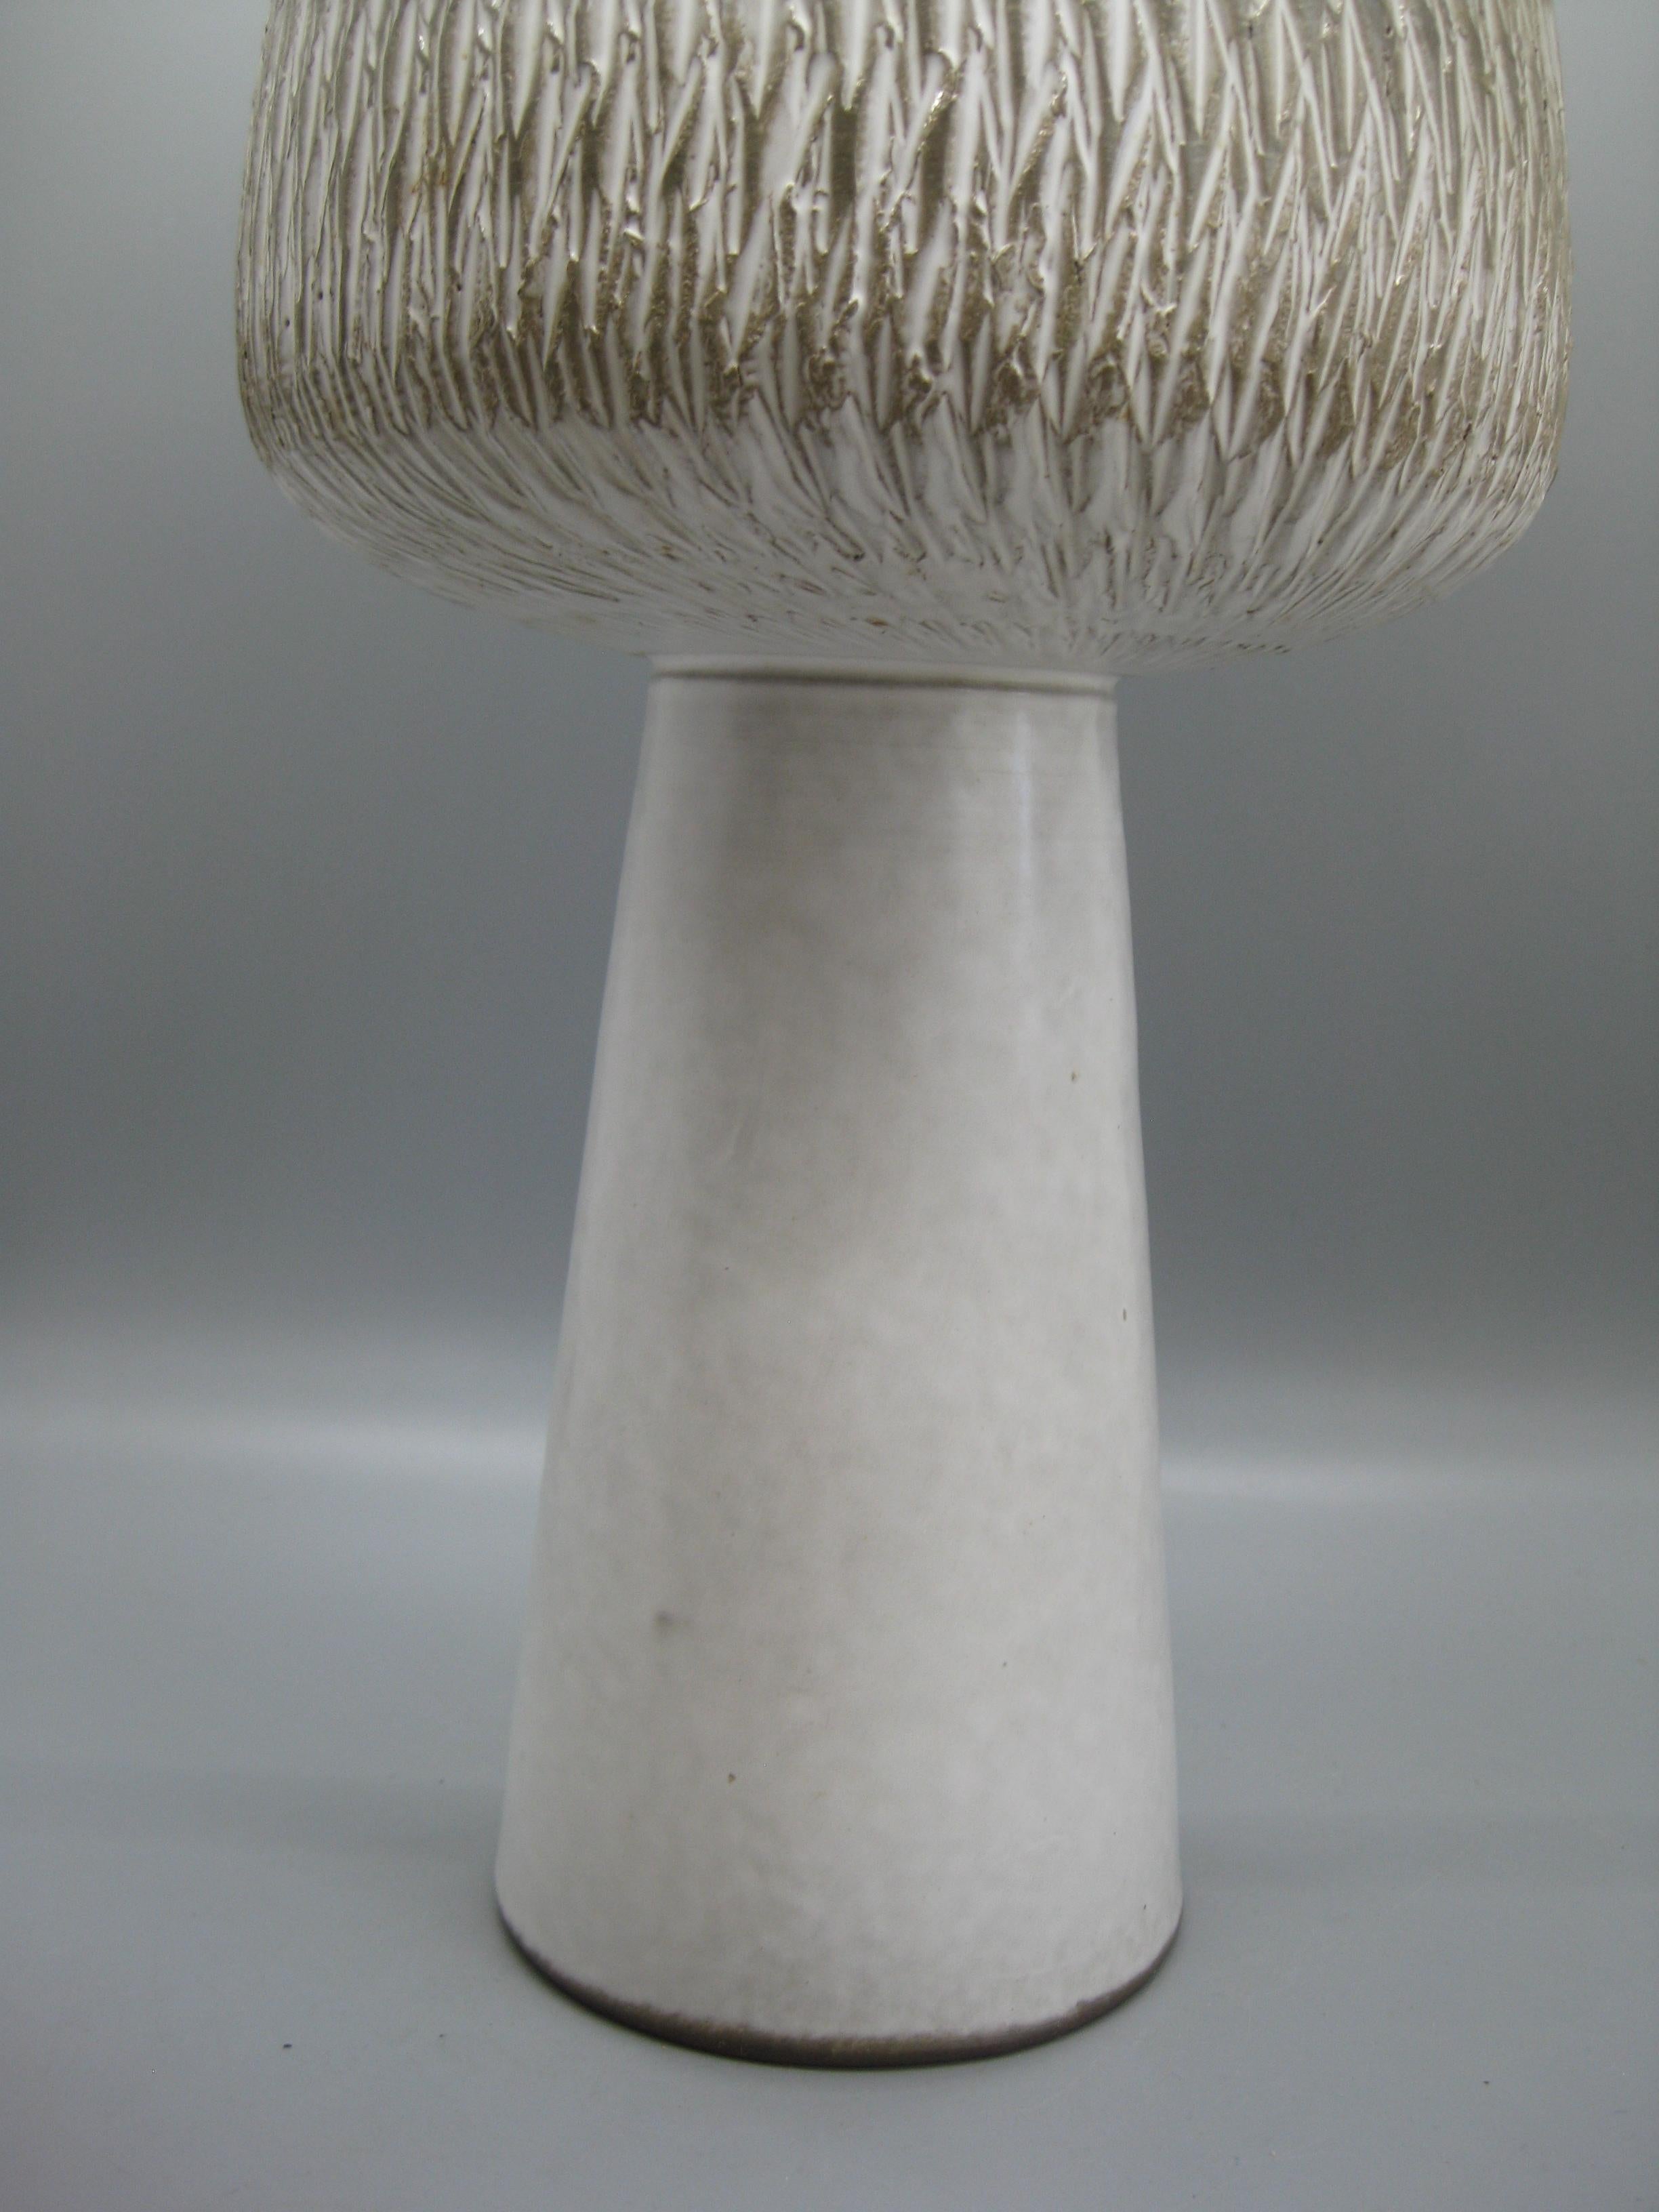 Hand-Crafted 1960s Japanese Modernist Ikebana Ceramic Pottery Sgraffito Pedestal Vase Vessel For Sale